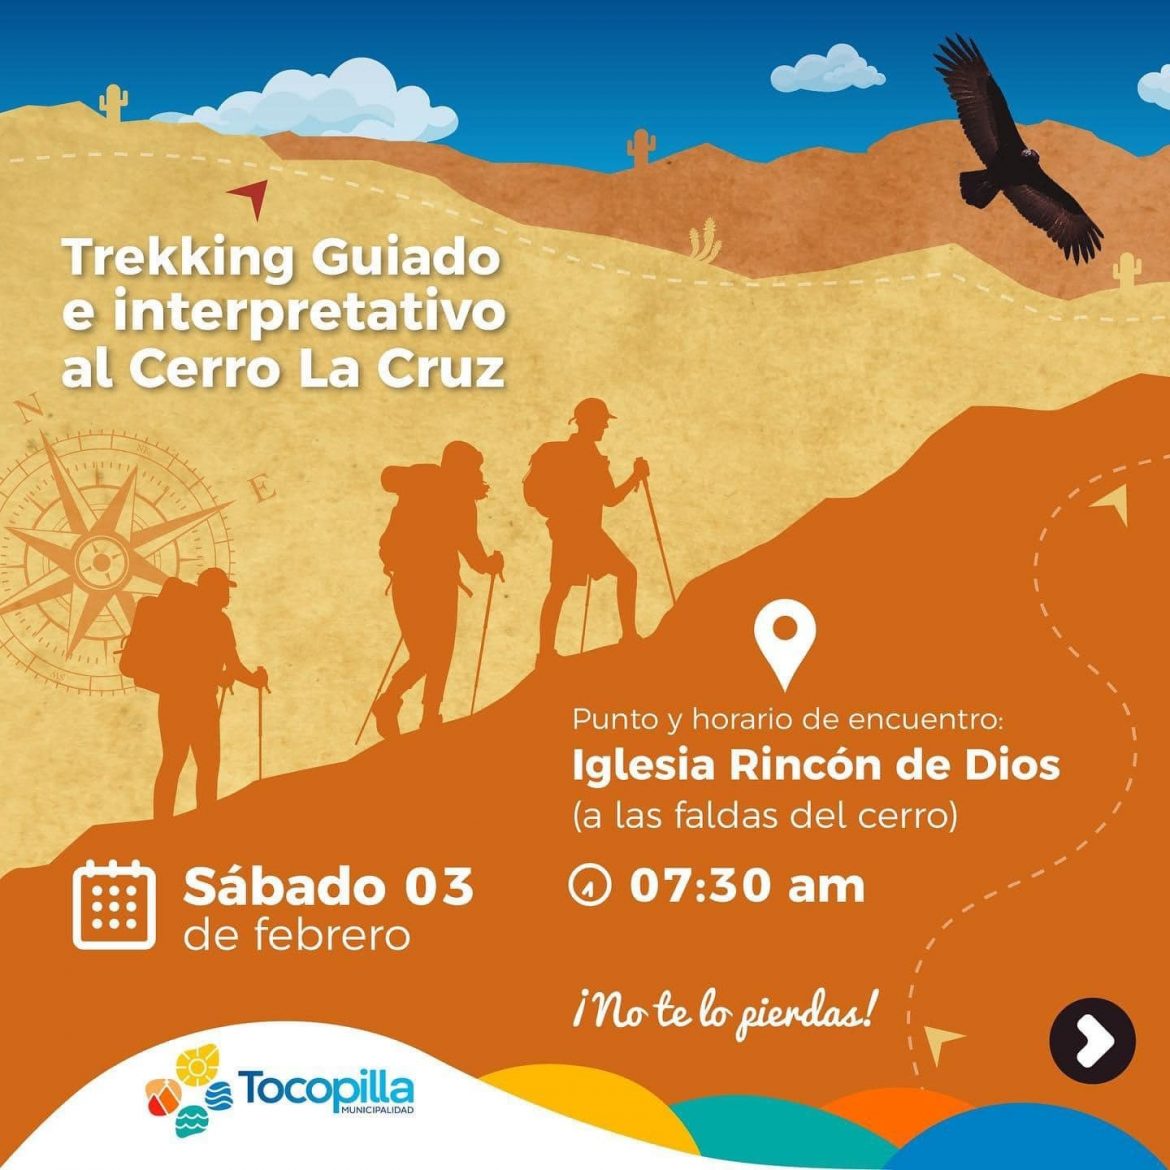 ¡Únete al Trekking guiado al Cerro La Cruz!